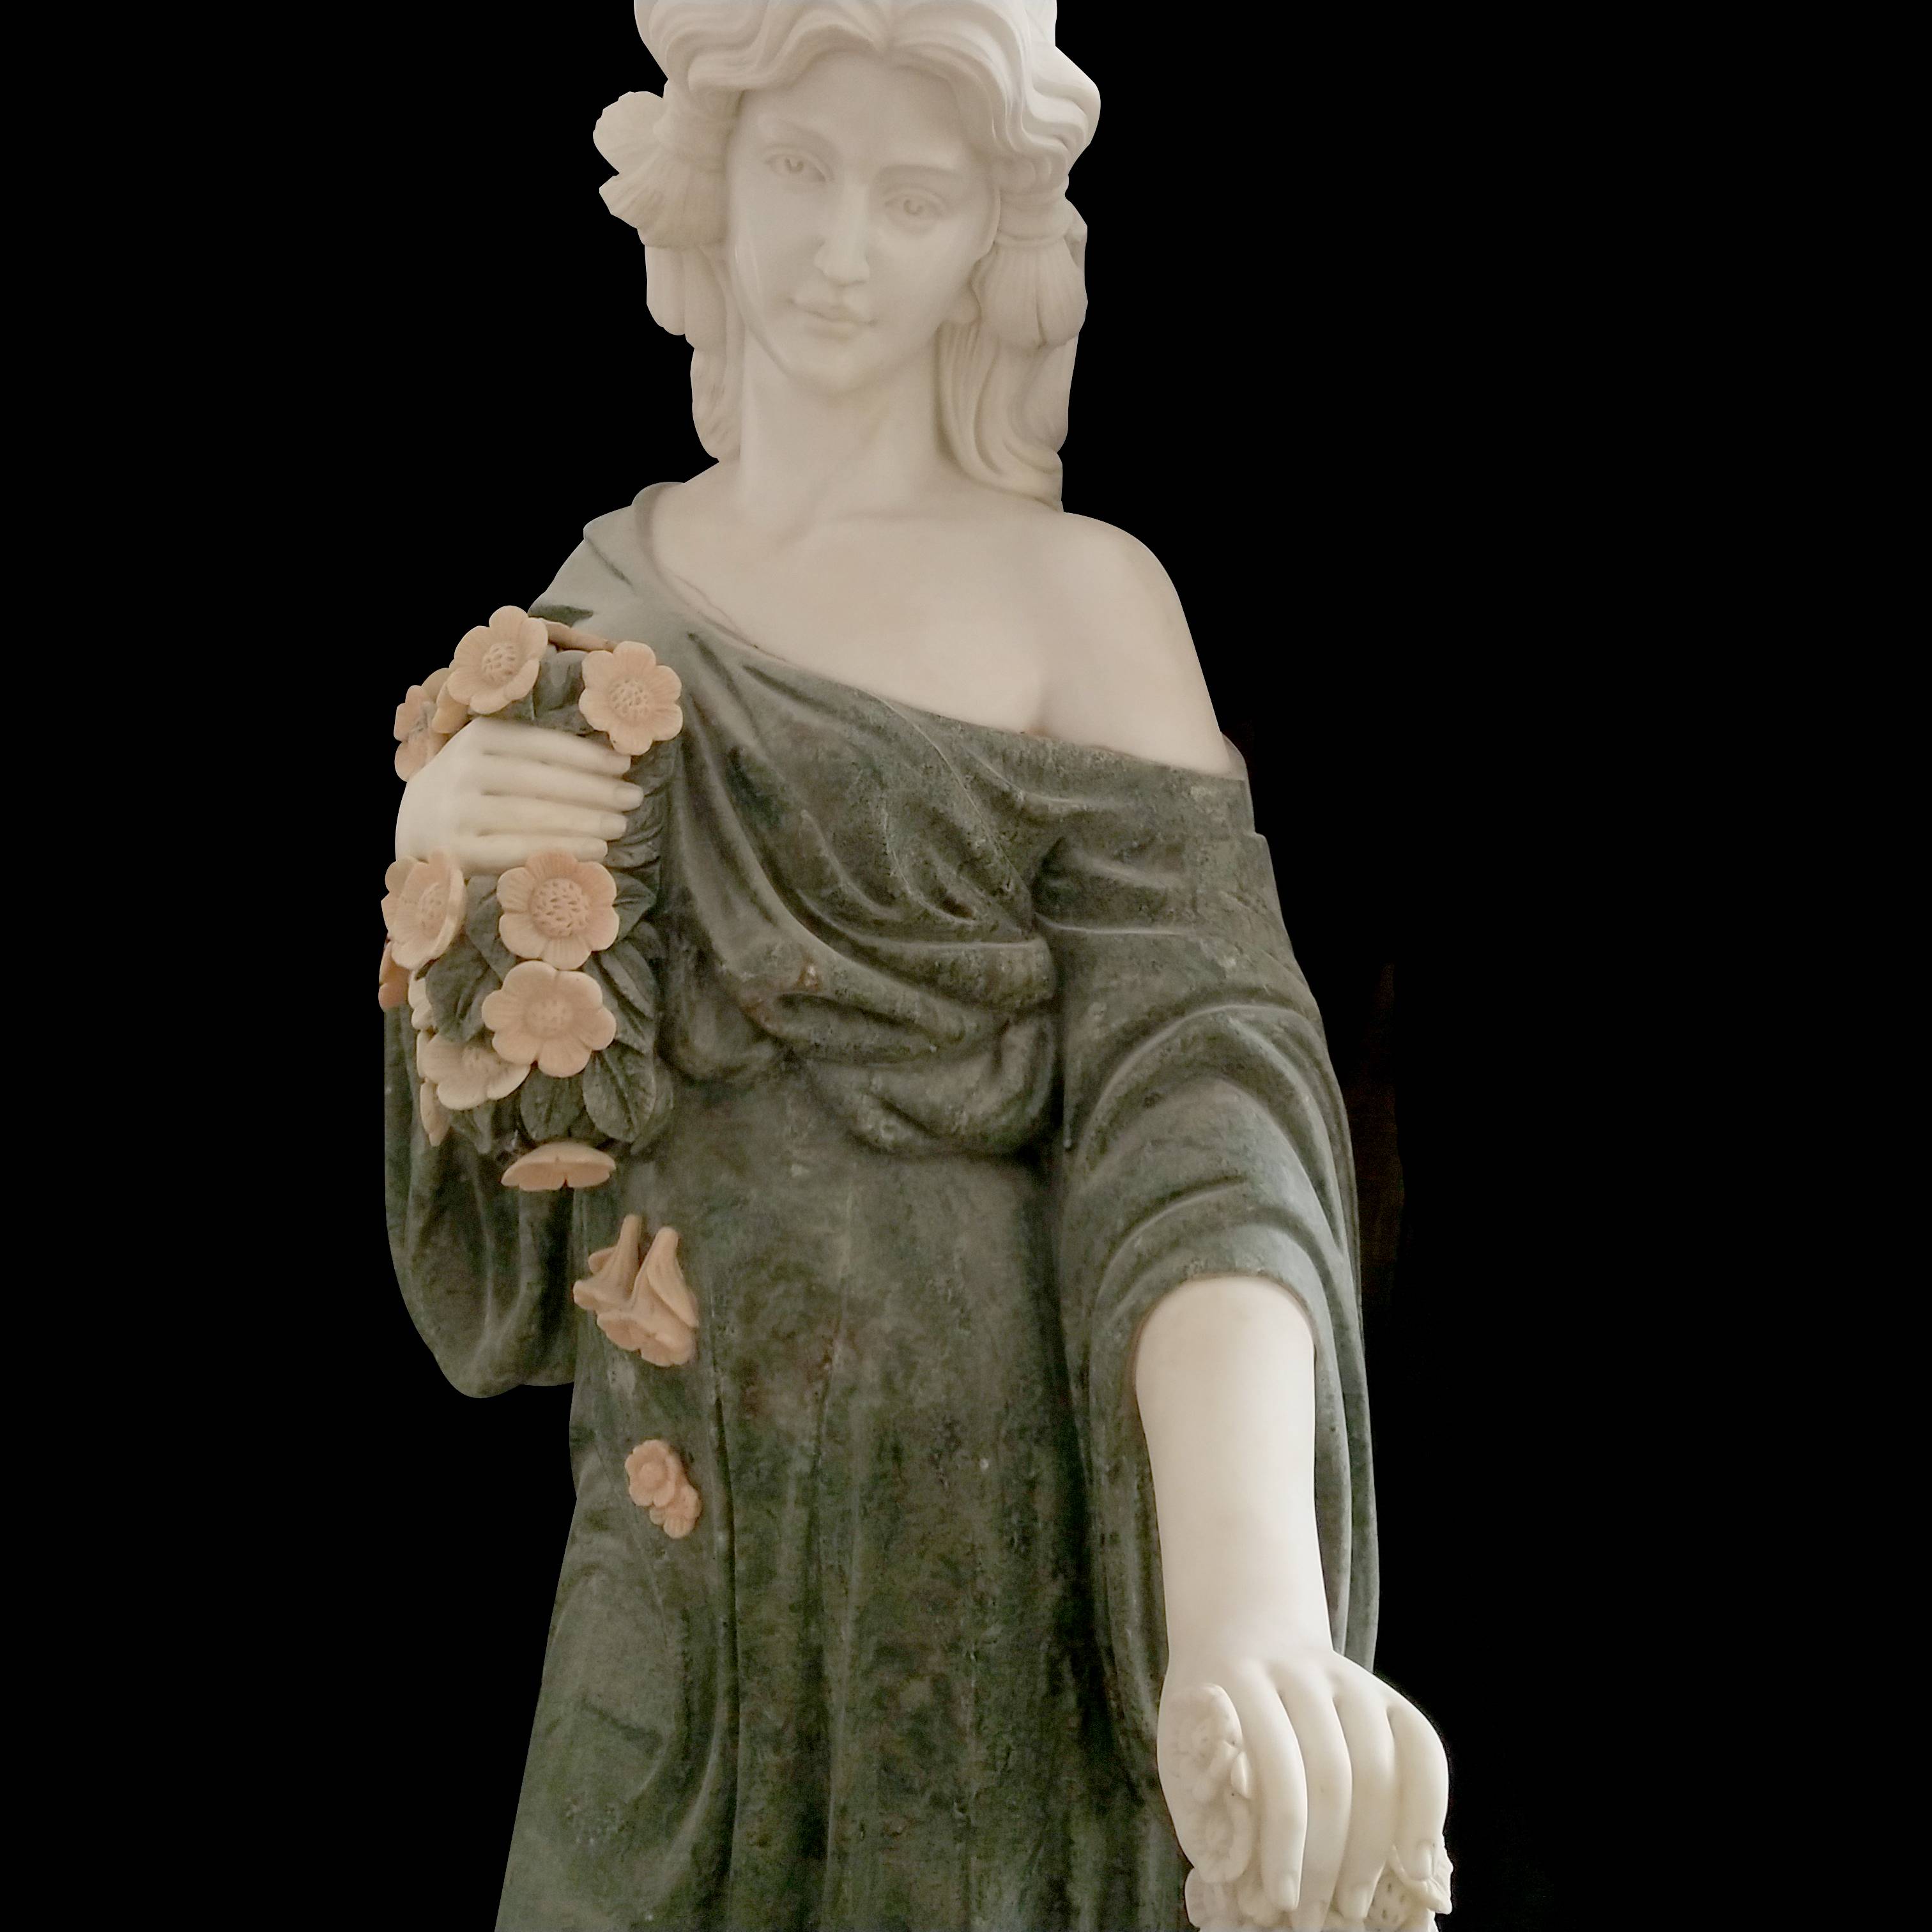 Vita religiosa magnitudine lapideae virginis Mariae et statuae marmoreae pro sale